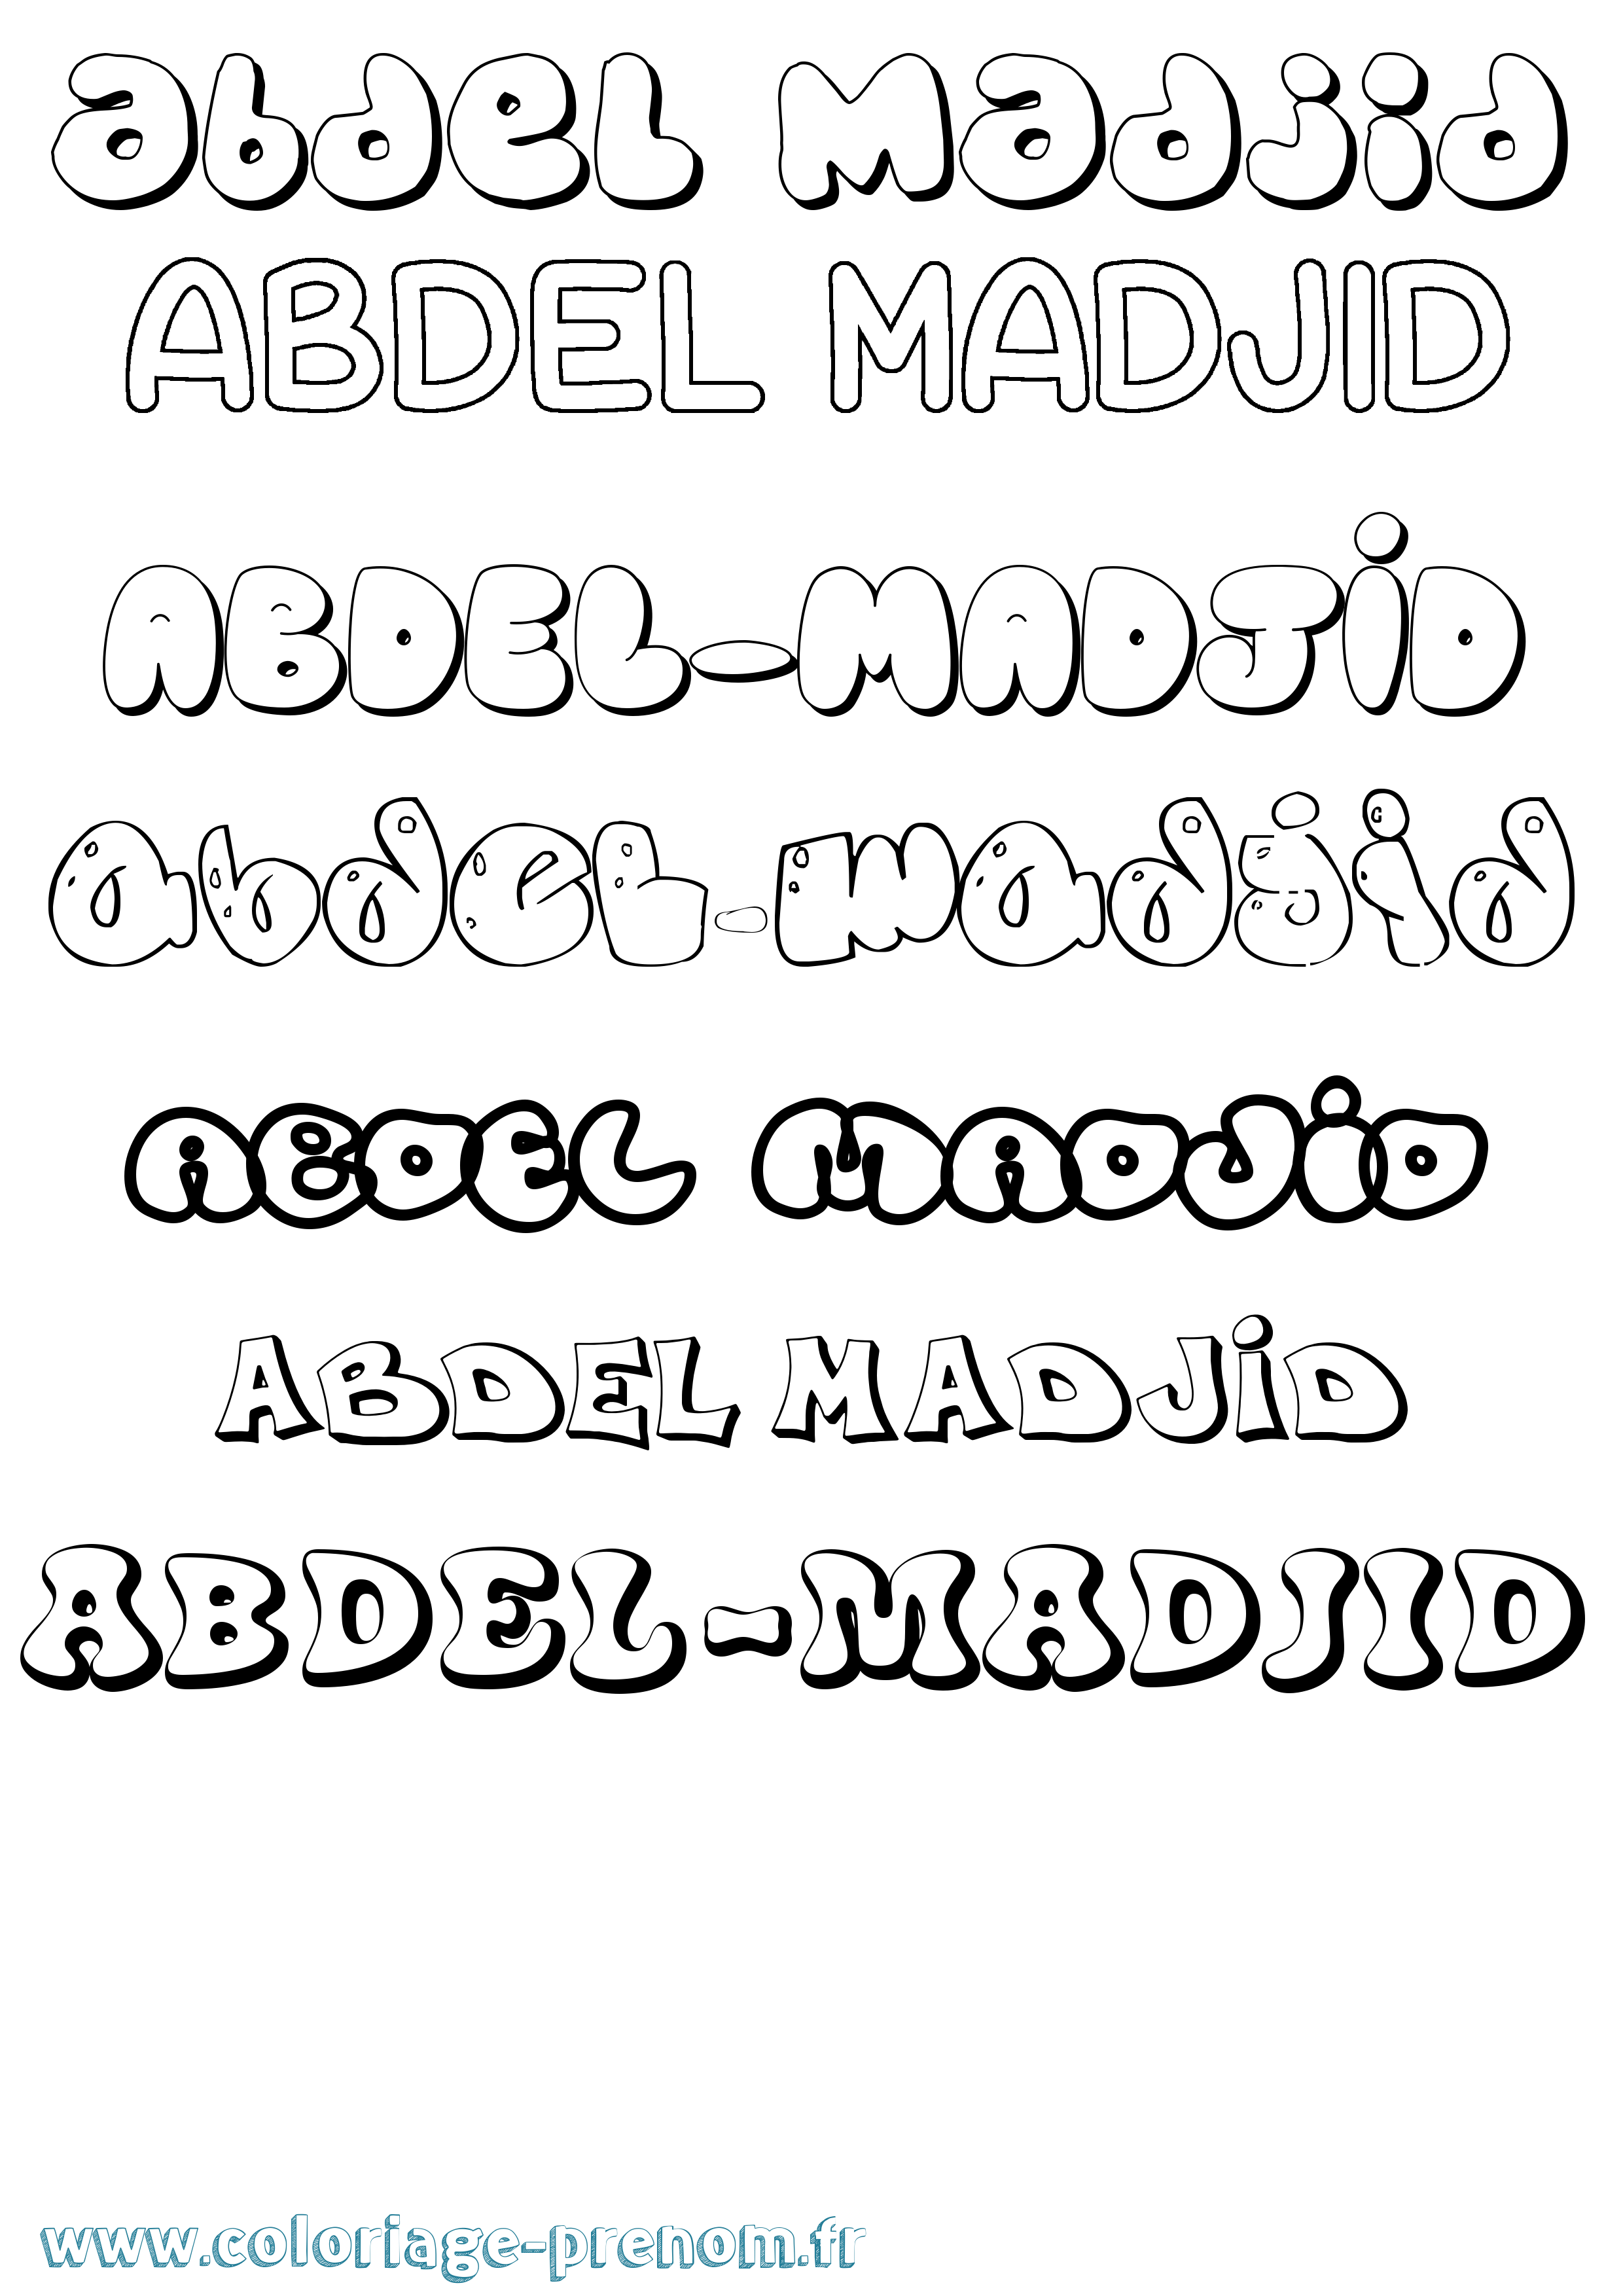 Coloriage prénom Abdel-Madjid Bubble